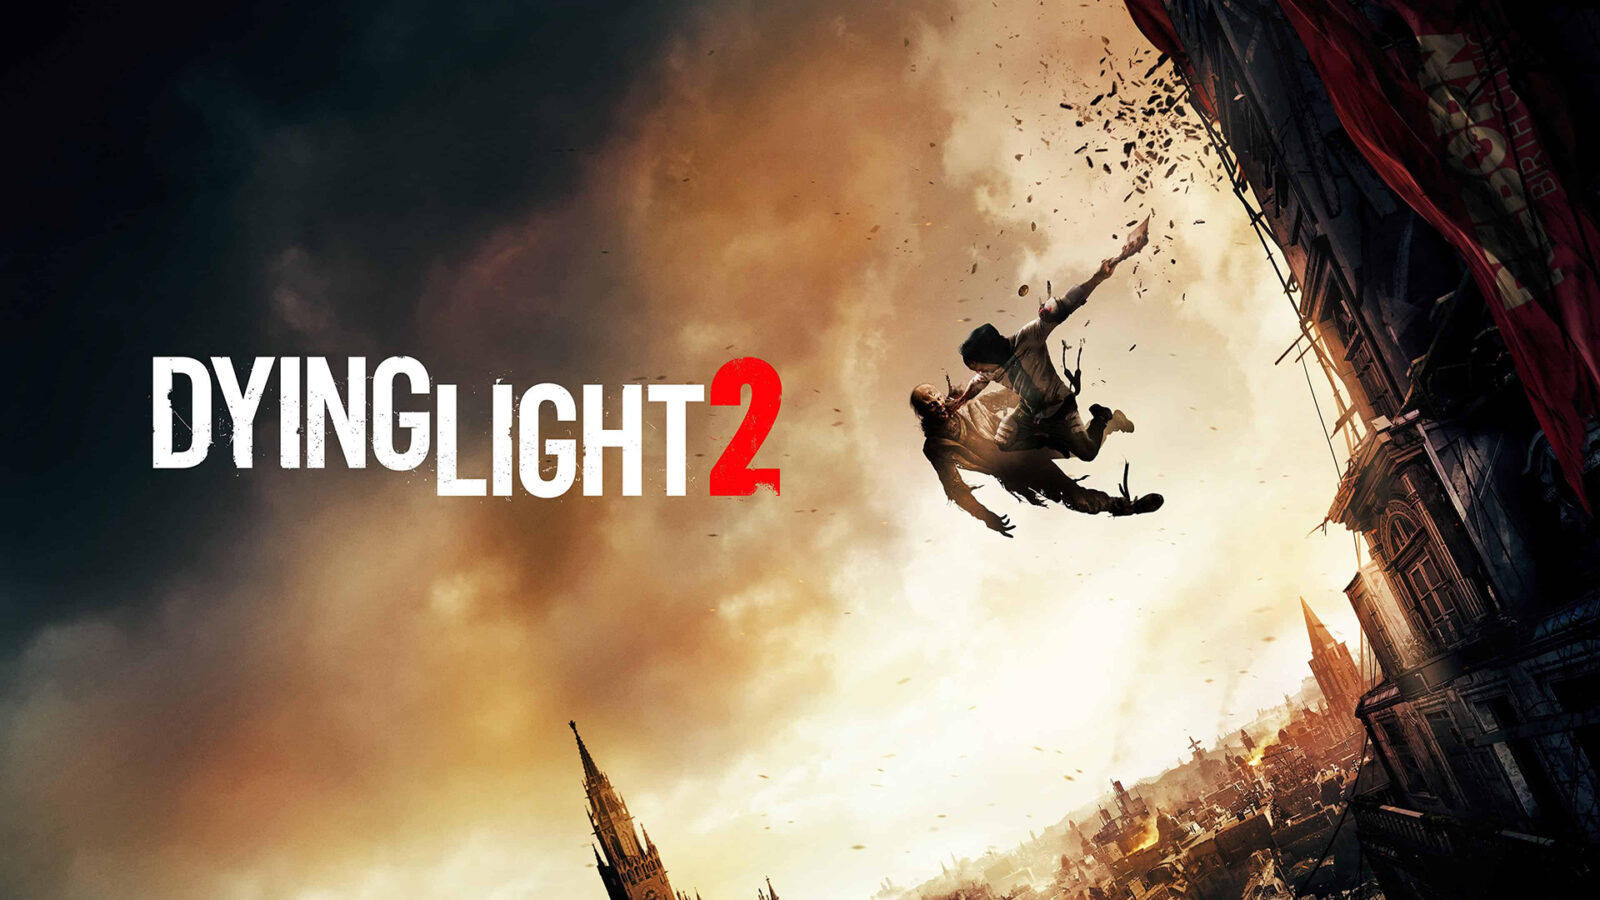 La storia di Dying Light 2 potrebbe essere un po' meno simile a Fallout